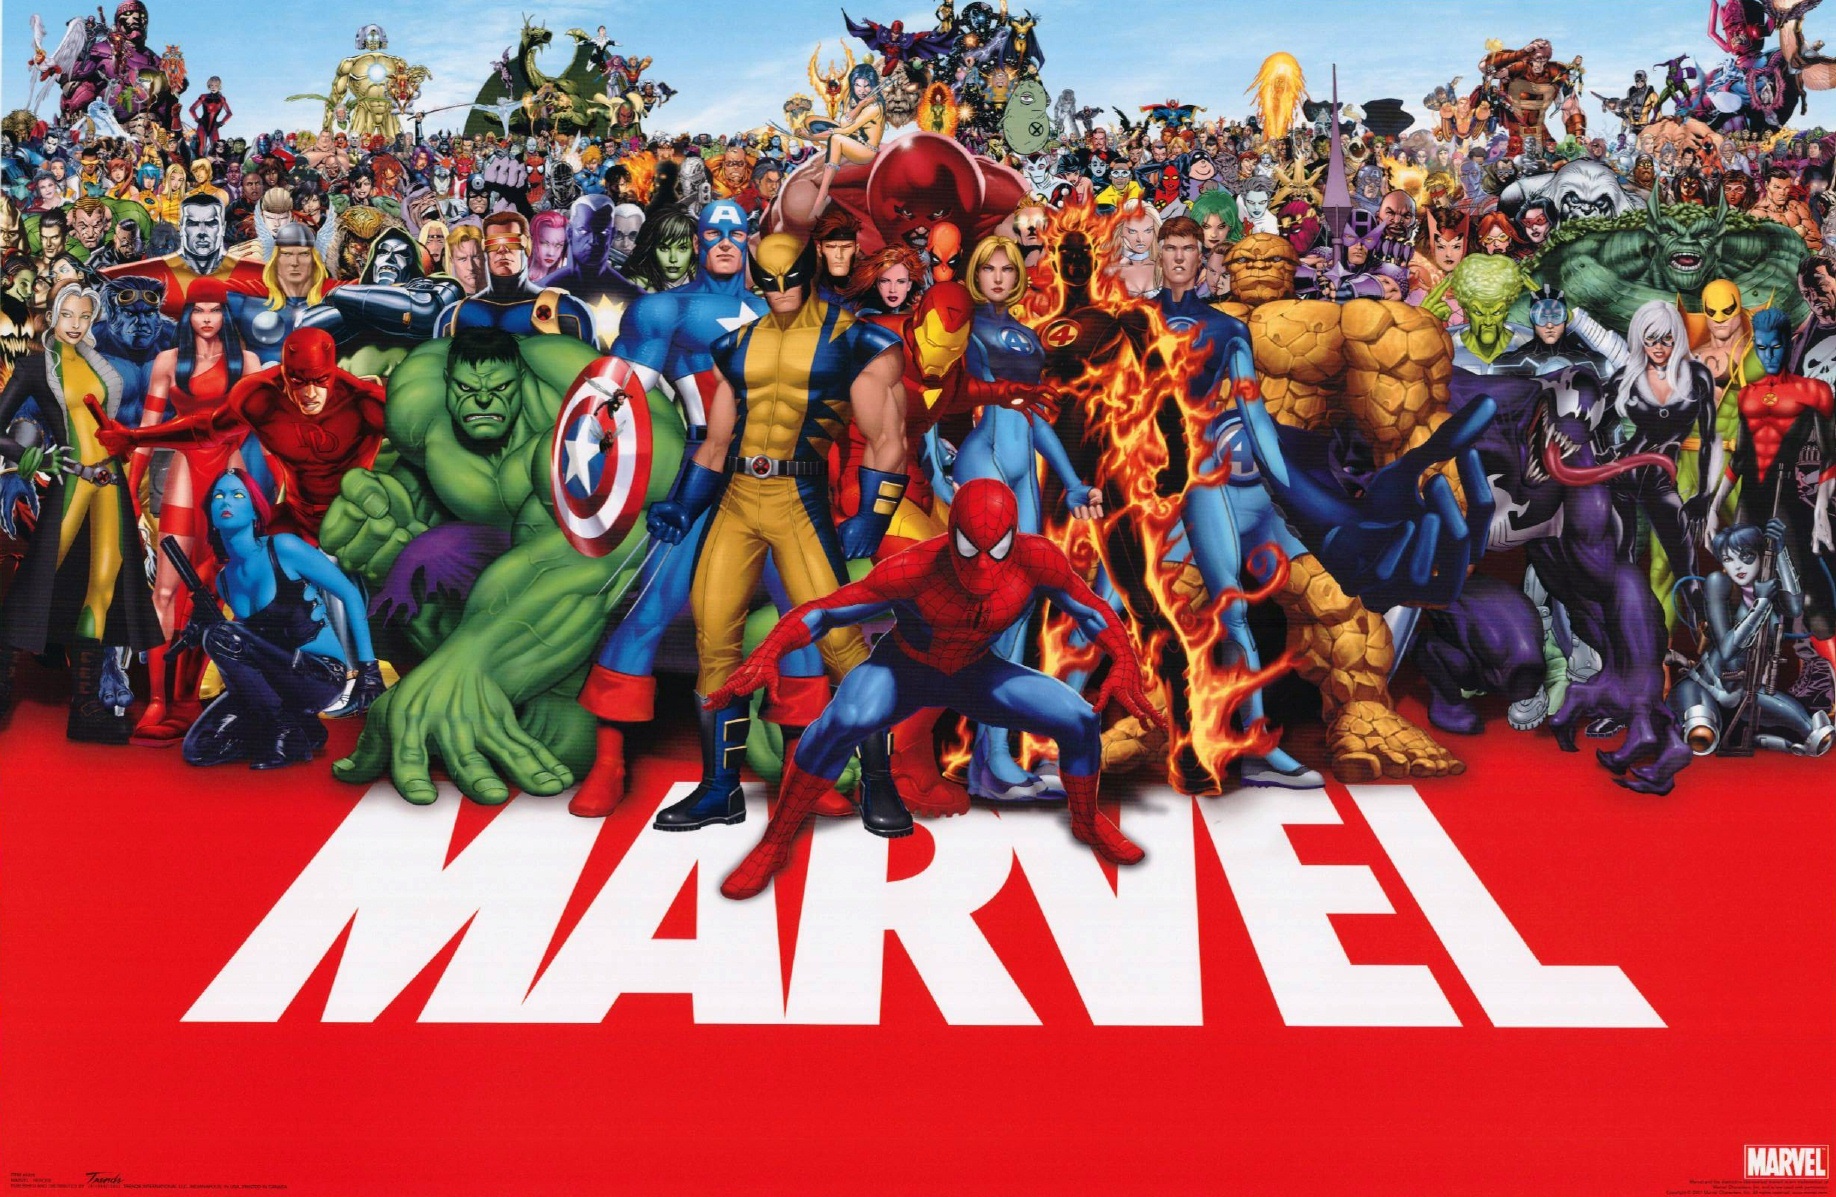 591498 завантажити картинку комікси, комікси marvel, адам варлок, ангел (комікси marvel), апокаліпсис (комікси marvel), барон земо, звір (комікси marvel), бен грімм, чорний кіт (marvel comics), блейд (комікси marvel), blink (marvel comics), бум бум (marvel comics), капітан америка, кассандра ленг, колос, циклоп (комікси marvel), сміливець, дедпул, доктор дум, доктор стрендж, doop (комікси marvel), его (комікси marvel), електра (комікси marvel), емма фрост, соколине око, халк, халлінг (комікси marvel), людина факел (комікси marvel), айсмен (комікси marvel), невидима жінка, залізна людина, джин грей, джонні сторм, джаггернаут (комікси marvel), кан завойовник, кейт бішоп, живий трибунал, ящірка (комікси marvel), lockheed (marvel comics), містер фантастик, містика (комікси marvel), nightcrawler (marvel comics), northstar (marvel comics), патріот (marvel comics), каратель, рід річардс, носоріг (комікси marvel), rogue (marvel comics), sandman (marvel comics), sentinel (marvel comics), вона халк, snowbird (marvel comics), дівчина павук, людина павук, сьюзан сторм, штука (комікси marvel), тор, отрута, бачення (комікси marvel), ванда максимова, уоррен вортінгтон iii, віккан (комікси marvel), росомаха - шпалери і заставки безкоштовно